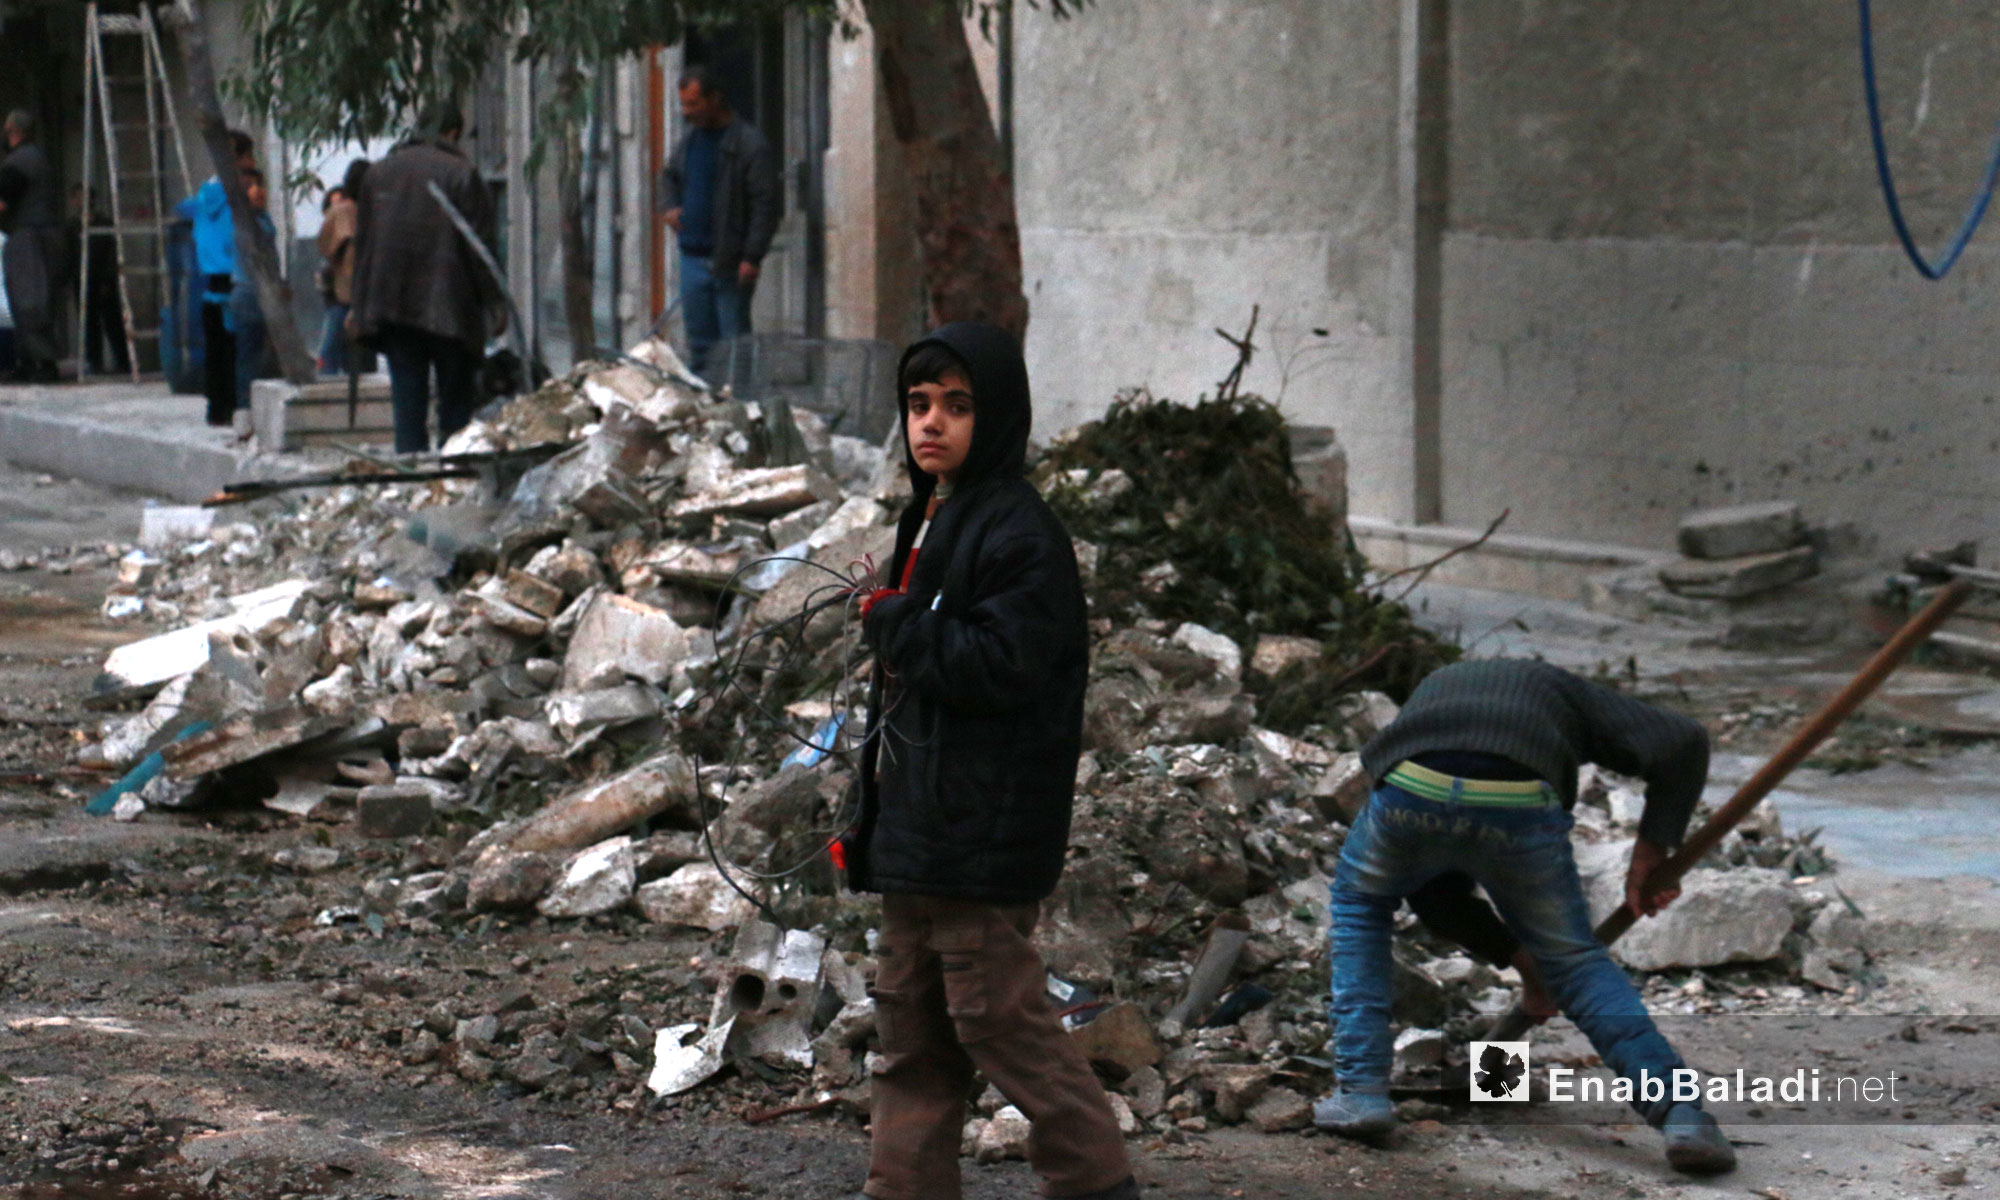 أطفال ينظفّون ركام القصف في حي الشعار بحلب - 17 تشرين الثاني  2016 (عنب بلدي)أطفال ينظفّون ركام القصف في حي الشعار بحلب - 17 تشرين الثاني  2016 (عنب بلدي)